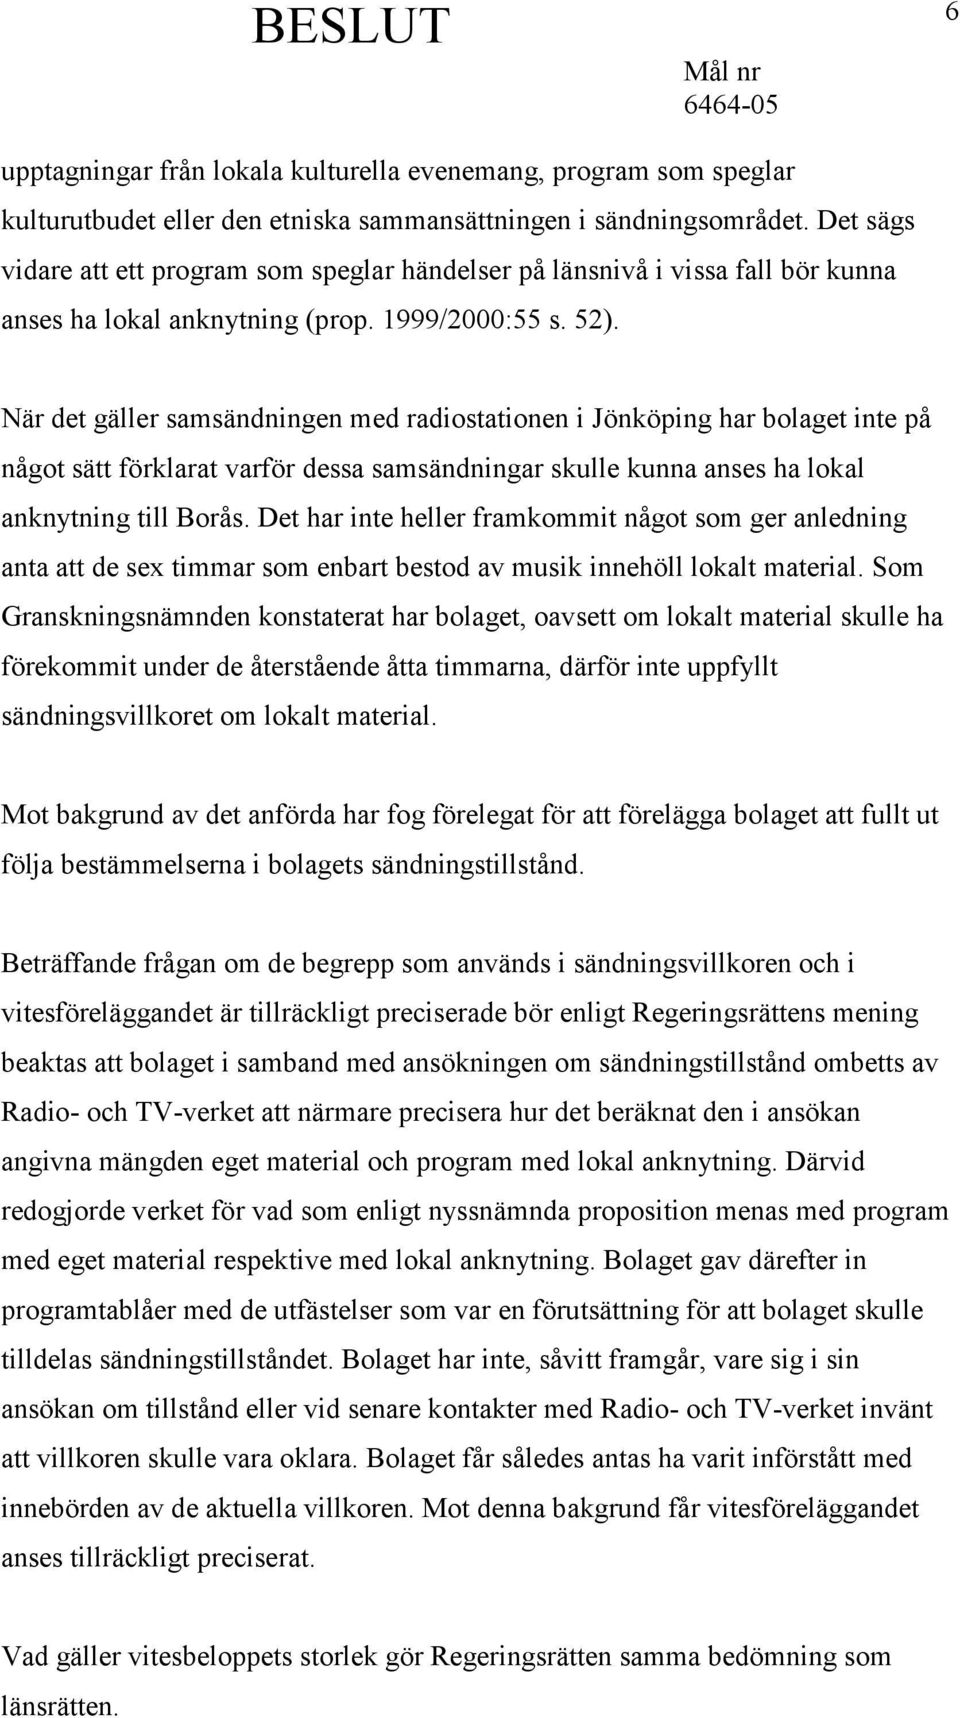 När det gäller samsändningen med radiostationen i Jönköping har bolaget inte på något sätt förklarat varför dessa samsändningar skulle kunna anses ha lokal anknytning till Borås.